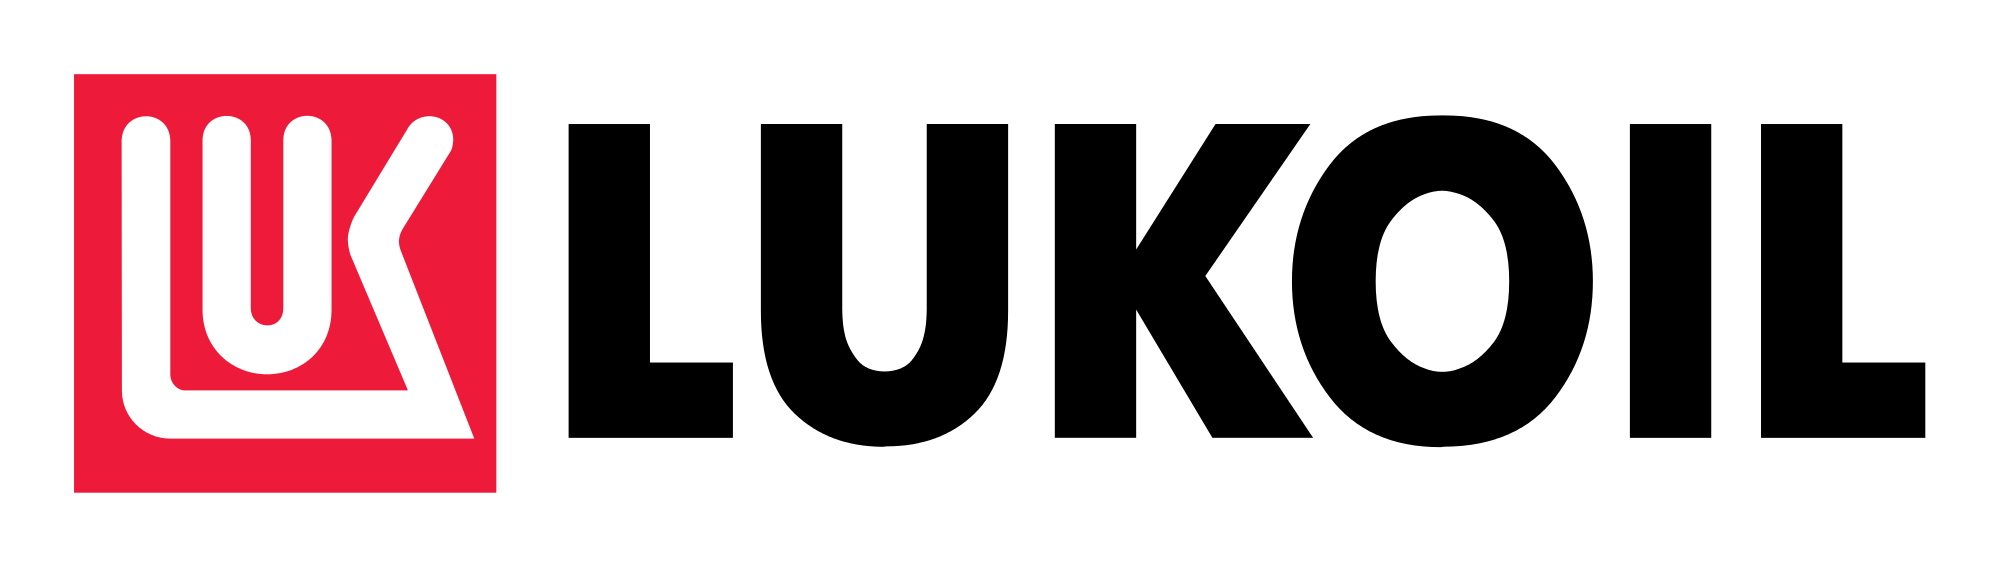 LUKOIL Logo - LUK OIL Logo lat.svg